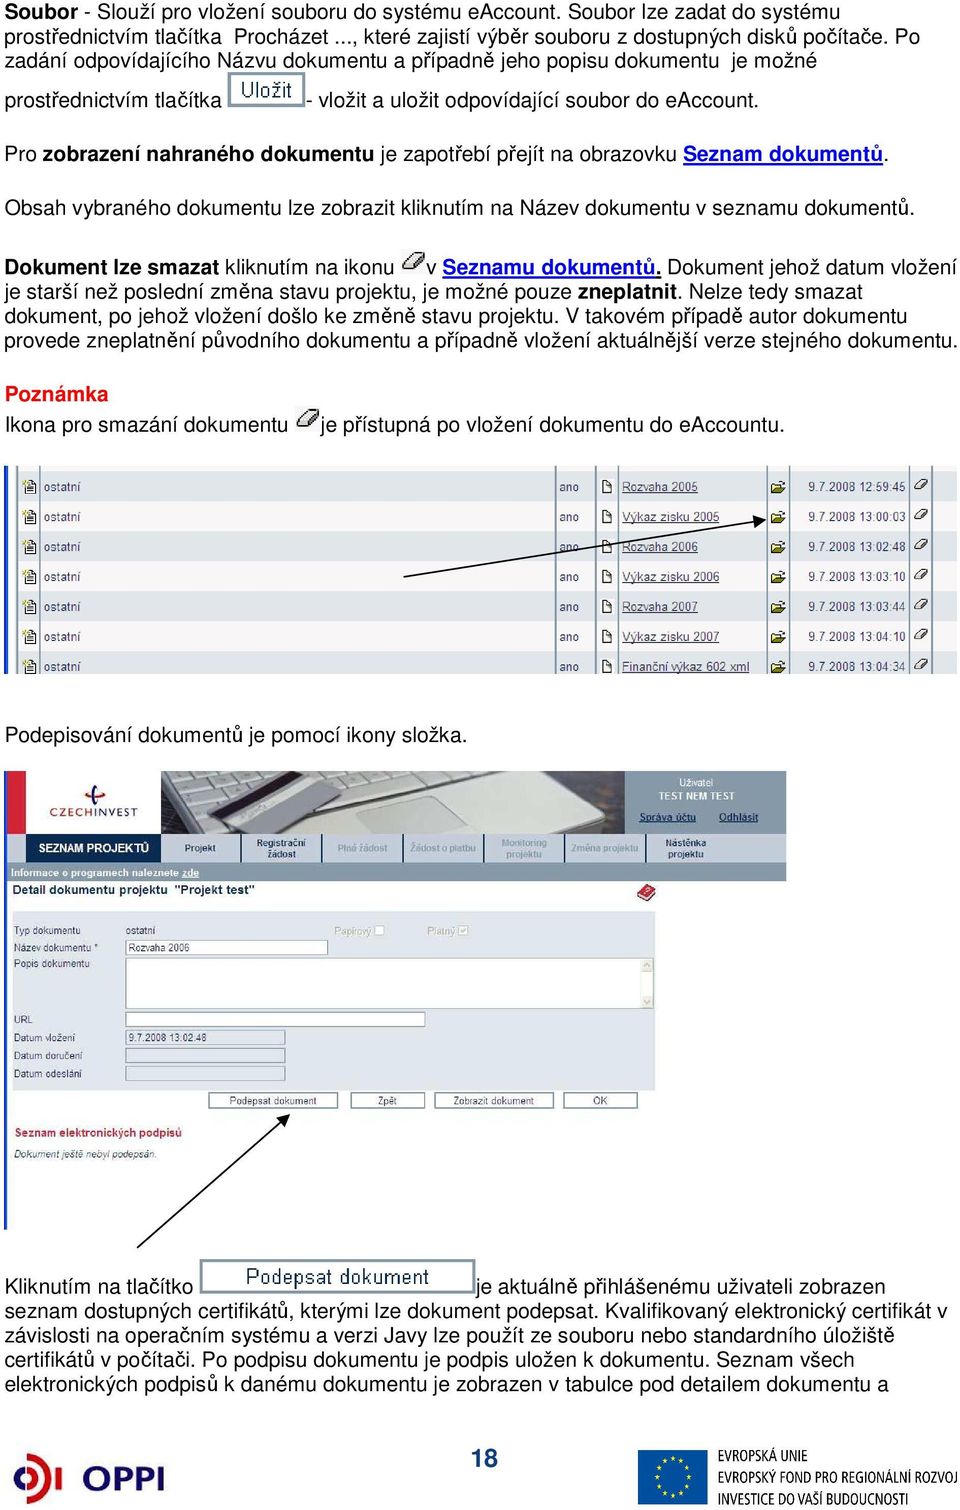 Pro zobrazení nahraného dokumentu je zapotřebí přejít na obrazovku Seznam dokumentů. Obsah vybraného dokumentu lze zobrazit kliknutím na Název dokumentu v seznamu dokumentů.